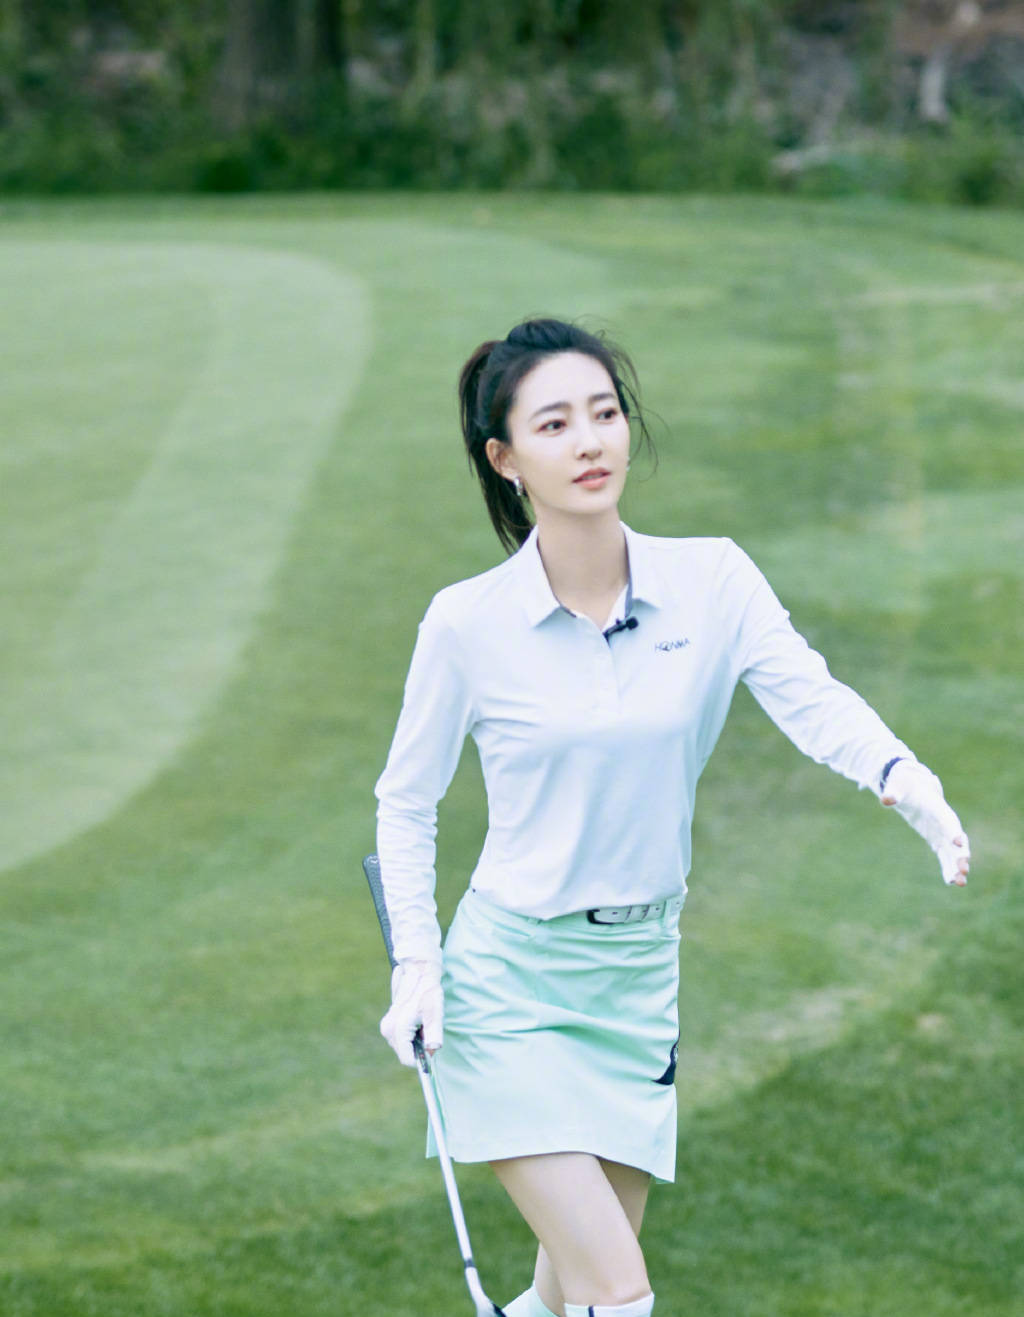 37岁王丽坤穿短裙打高尔夫,身材修长苗条气质绝佳